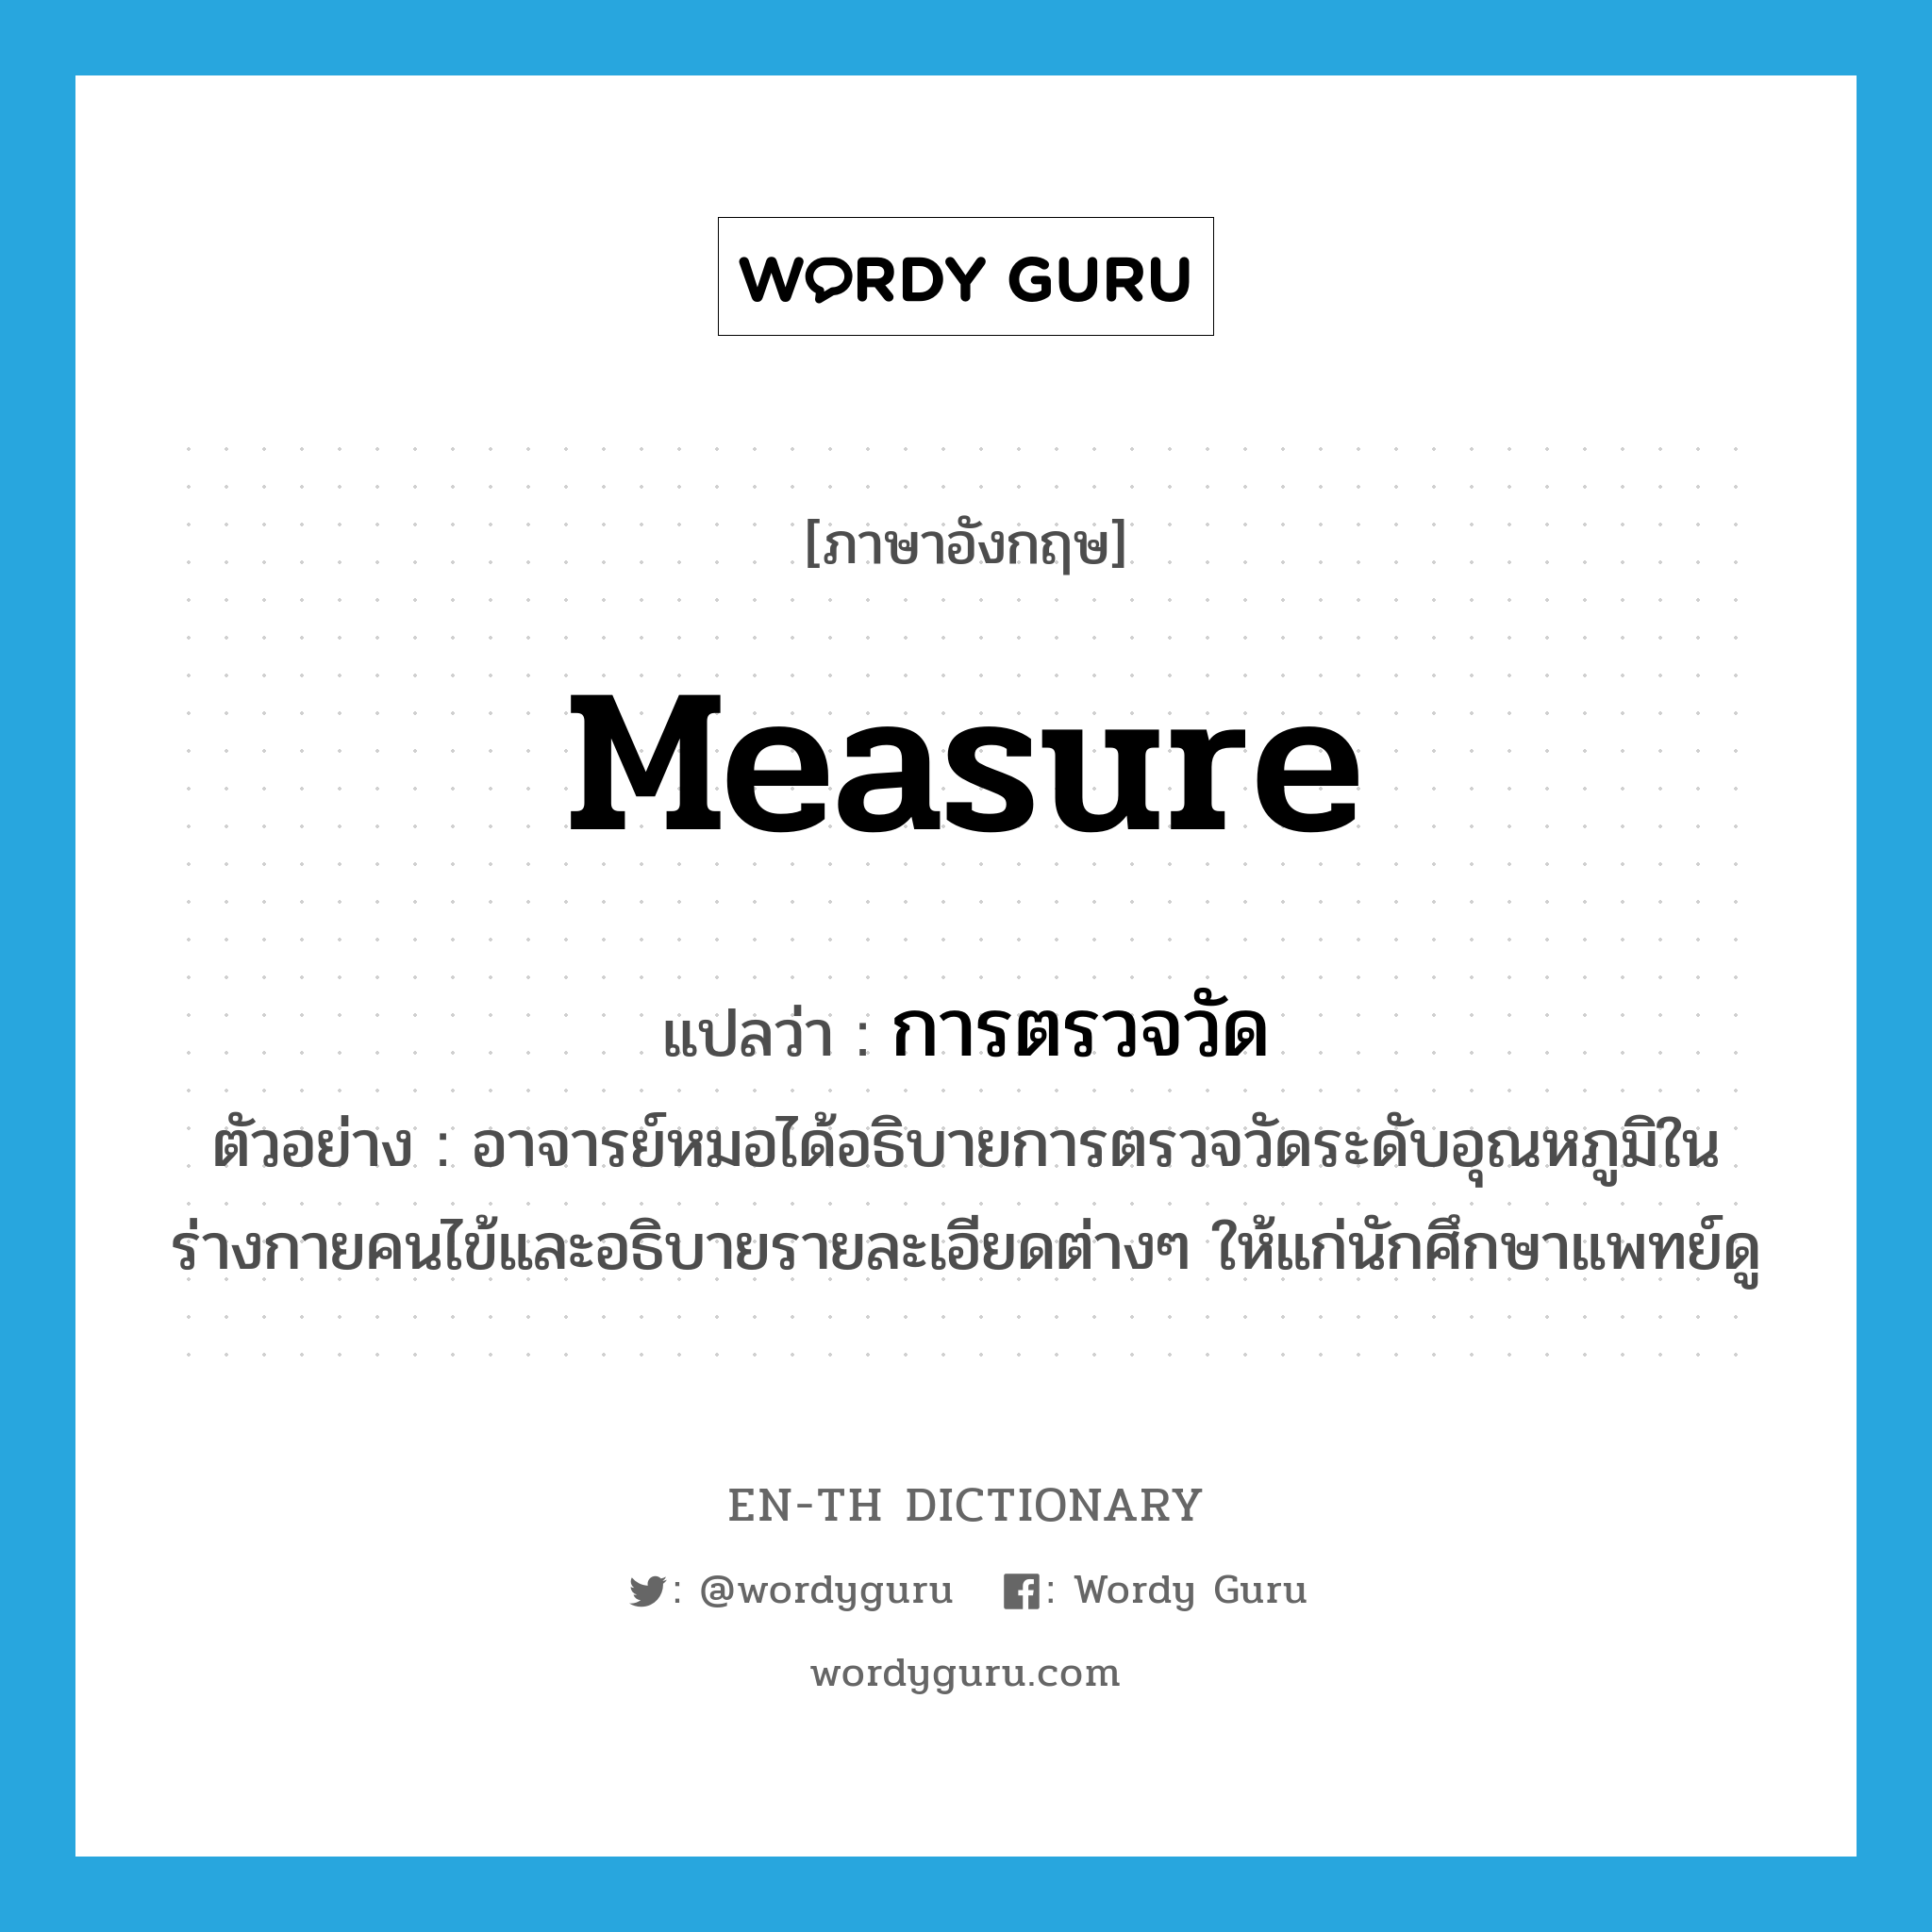 measure แปลว่า?, คำศัพท์ภาษาอังกฤษ measure แปลว่า การตรวจวัด ประเภท N ตัวอย่าง อาจารย์หมอได้อธิบายการตรวจวัดระดับอุณหภูมิในร่างกายคนไข้และอธิบายรายละเอียดต่างๆ ให้แก่นักศึกษาแพทย์ดู หมวด N